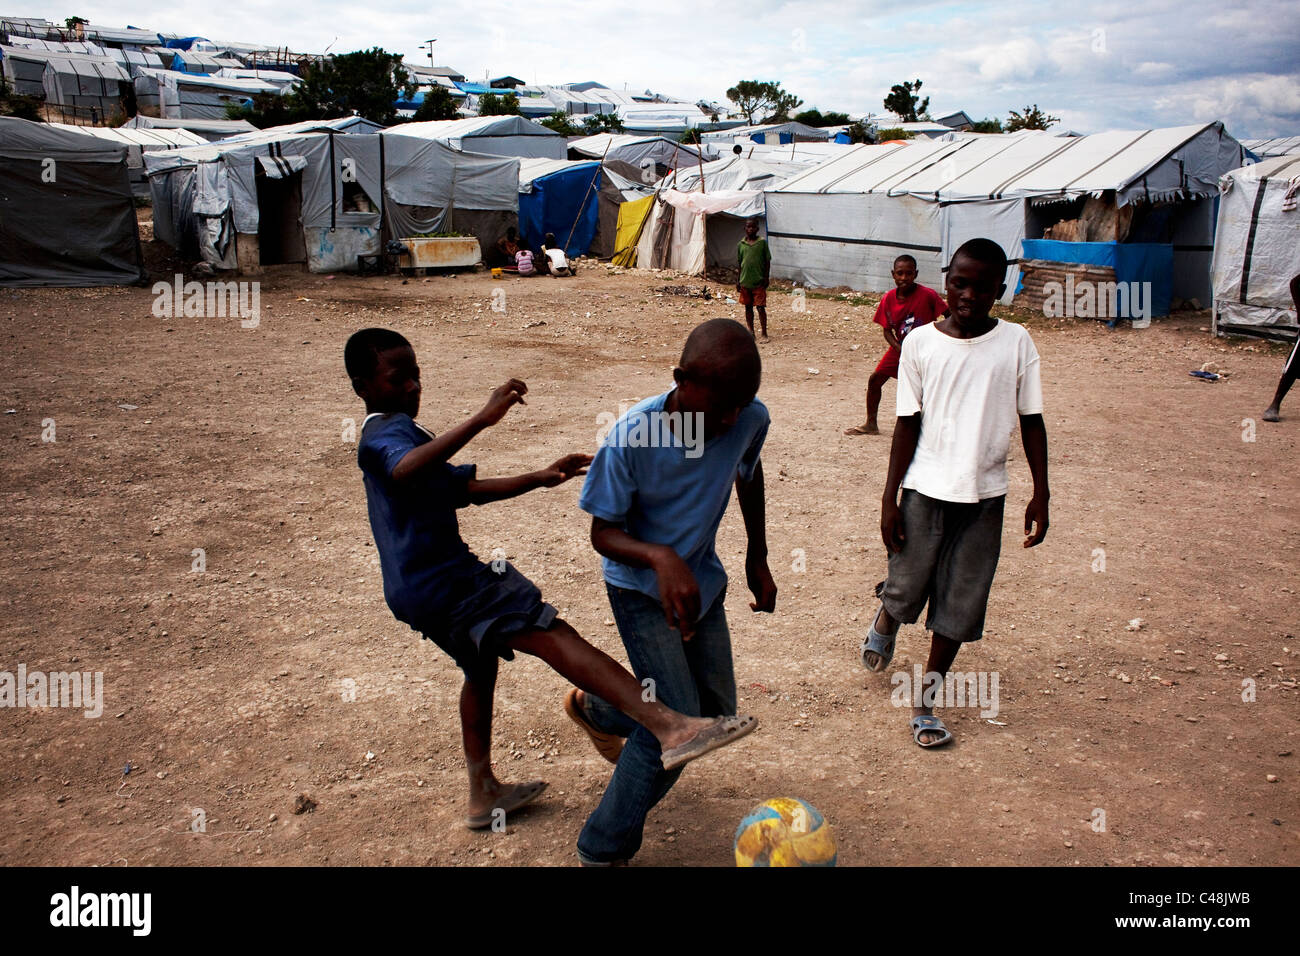 Les jeunes garçons football plaing la tente camping étant leur recours  après le tremblement de terre Photo Stock - Alamy